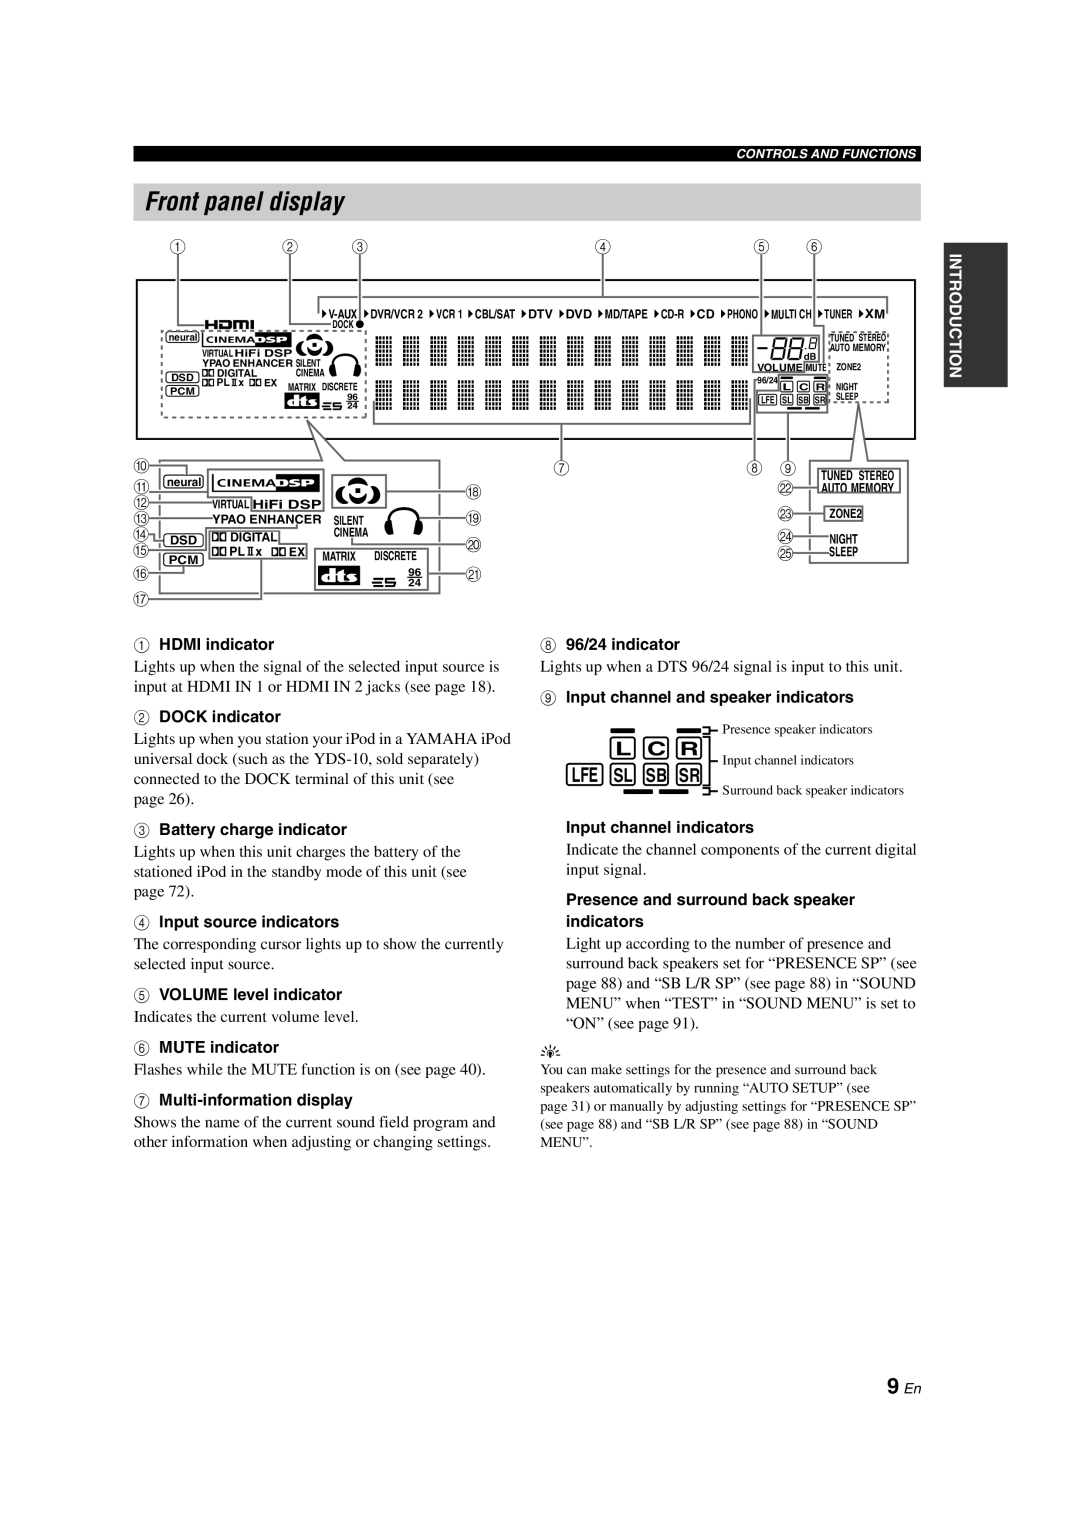 Yamaha HTR-6090 owner manual Front panel display, 9 En, L C R, Lfe Sl Sb Sr 